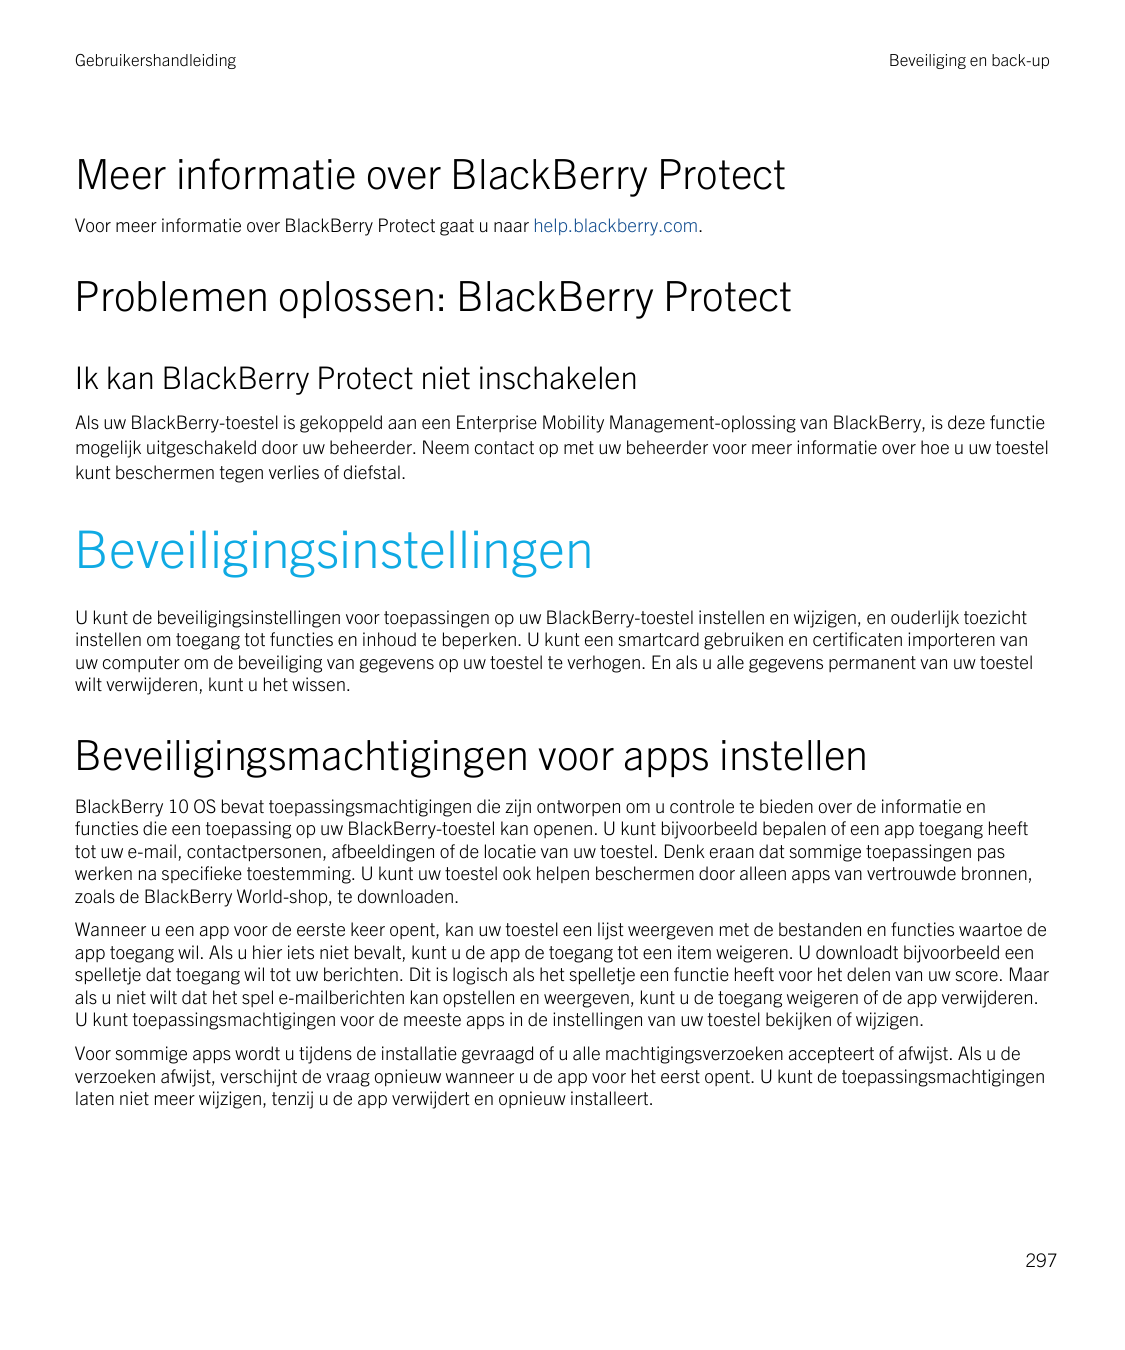 GebruikershandleidingBeveiliging en back-upMeer informatie over BlackBerry ProtectVoor meer informatie over BlackBerry Protect g